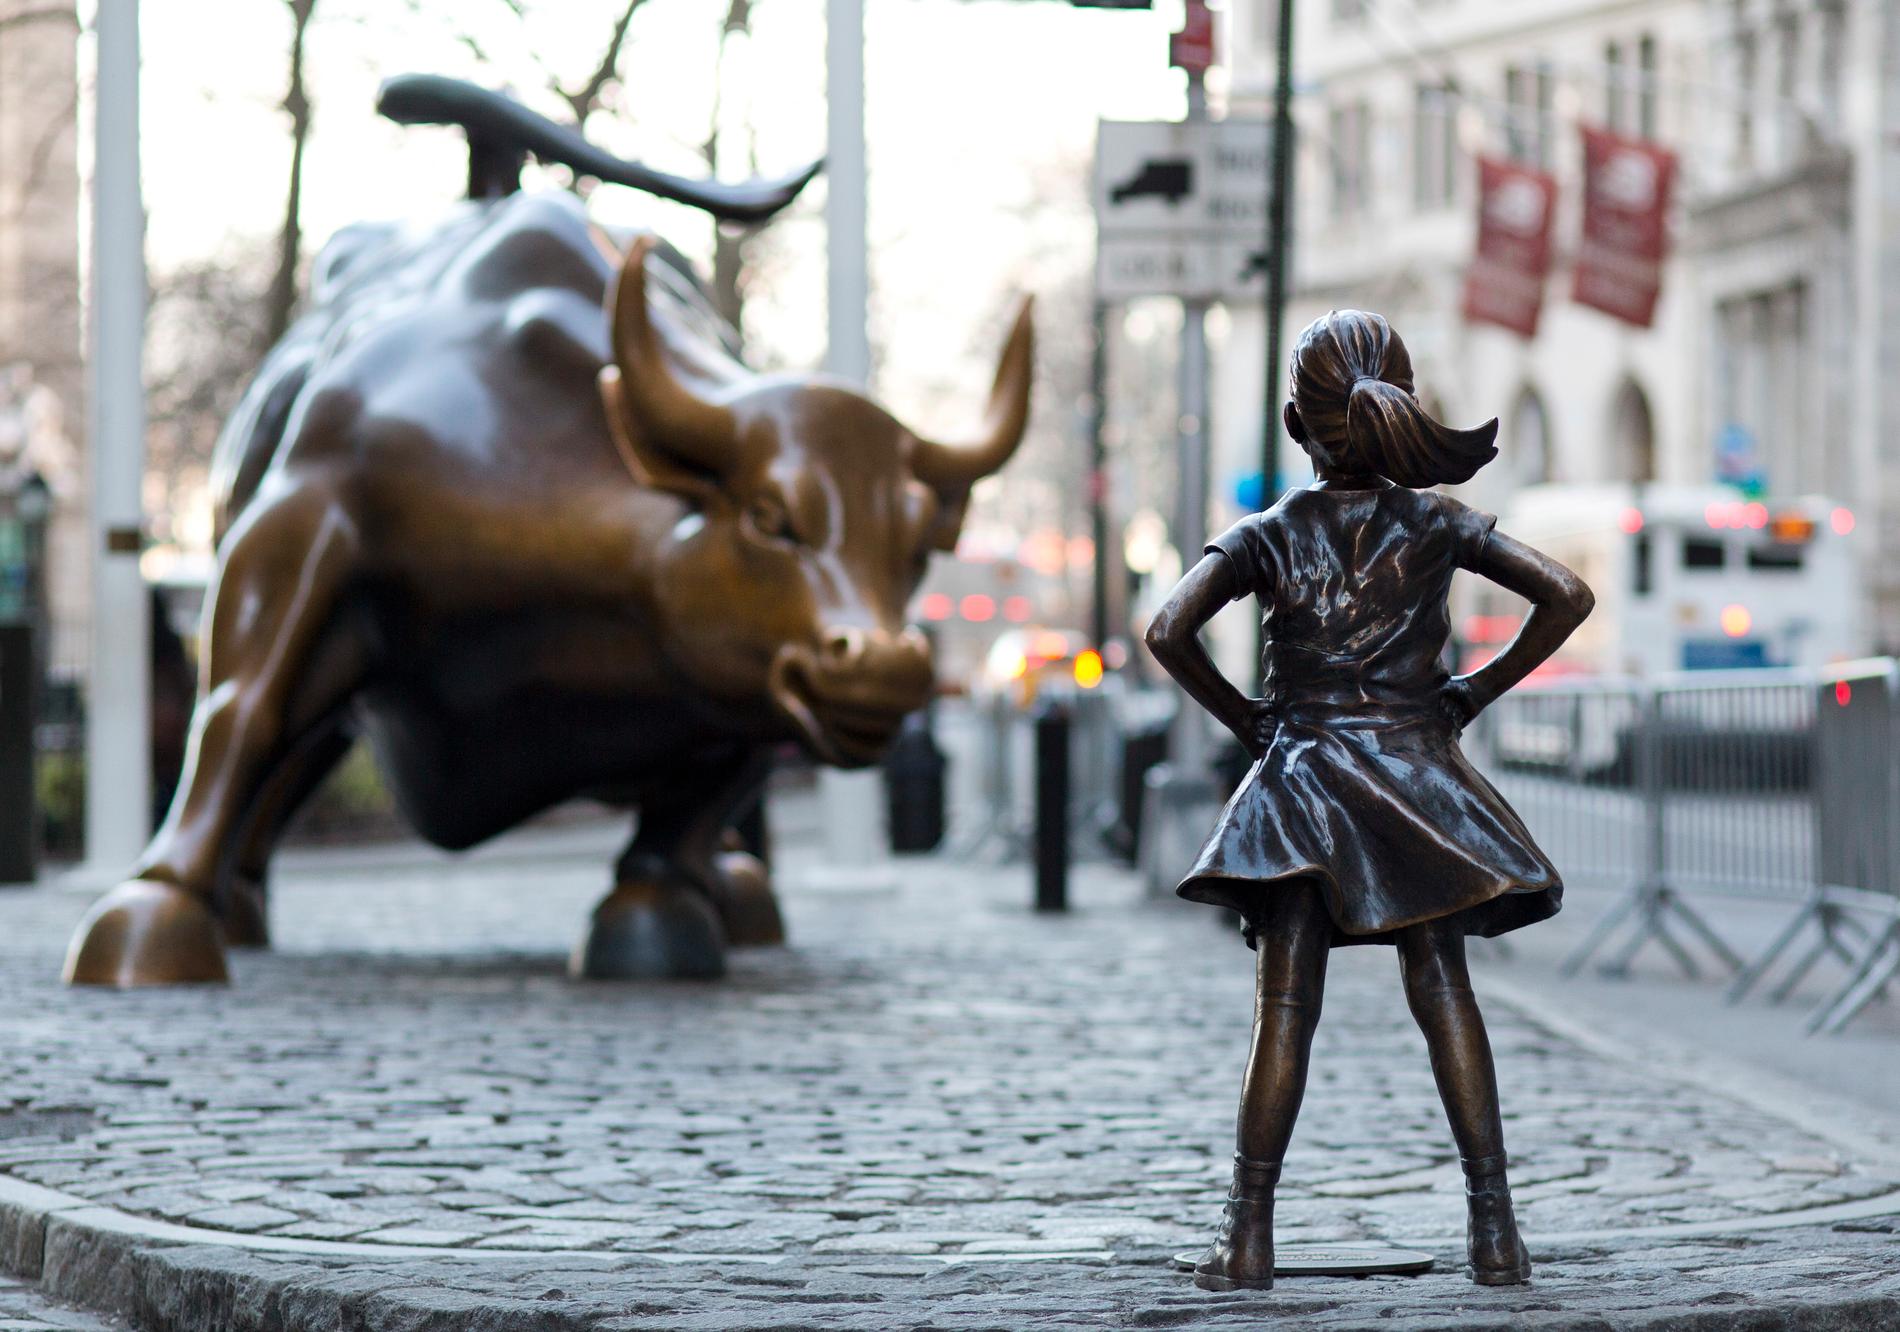 Flickskulpturen står mittemot tjuren som blivit en symbol för Wall street. 